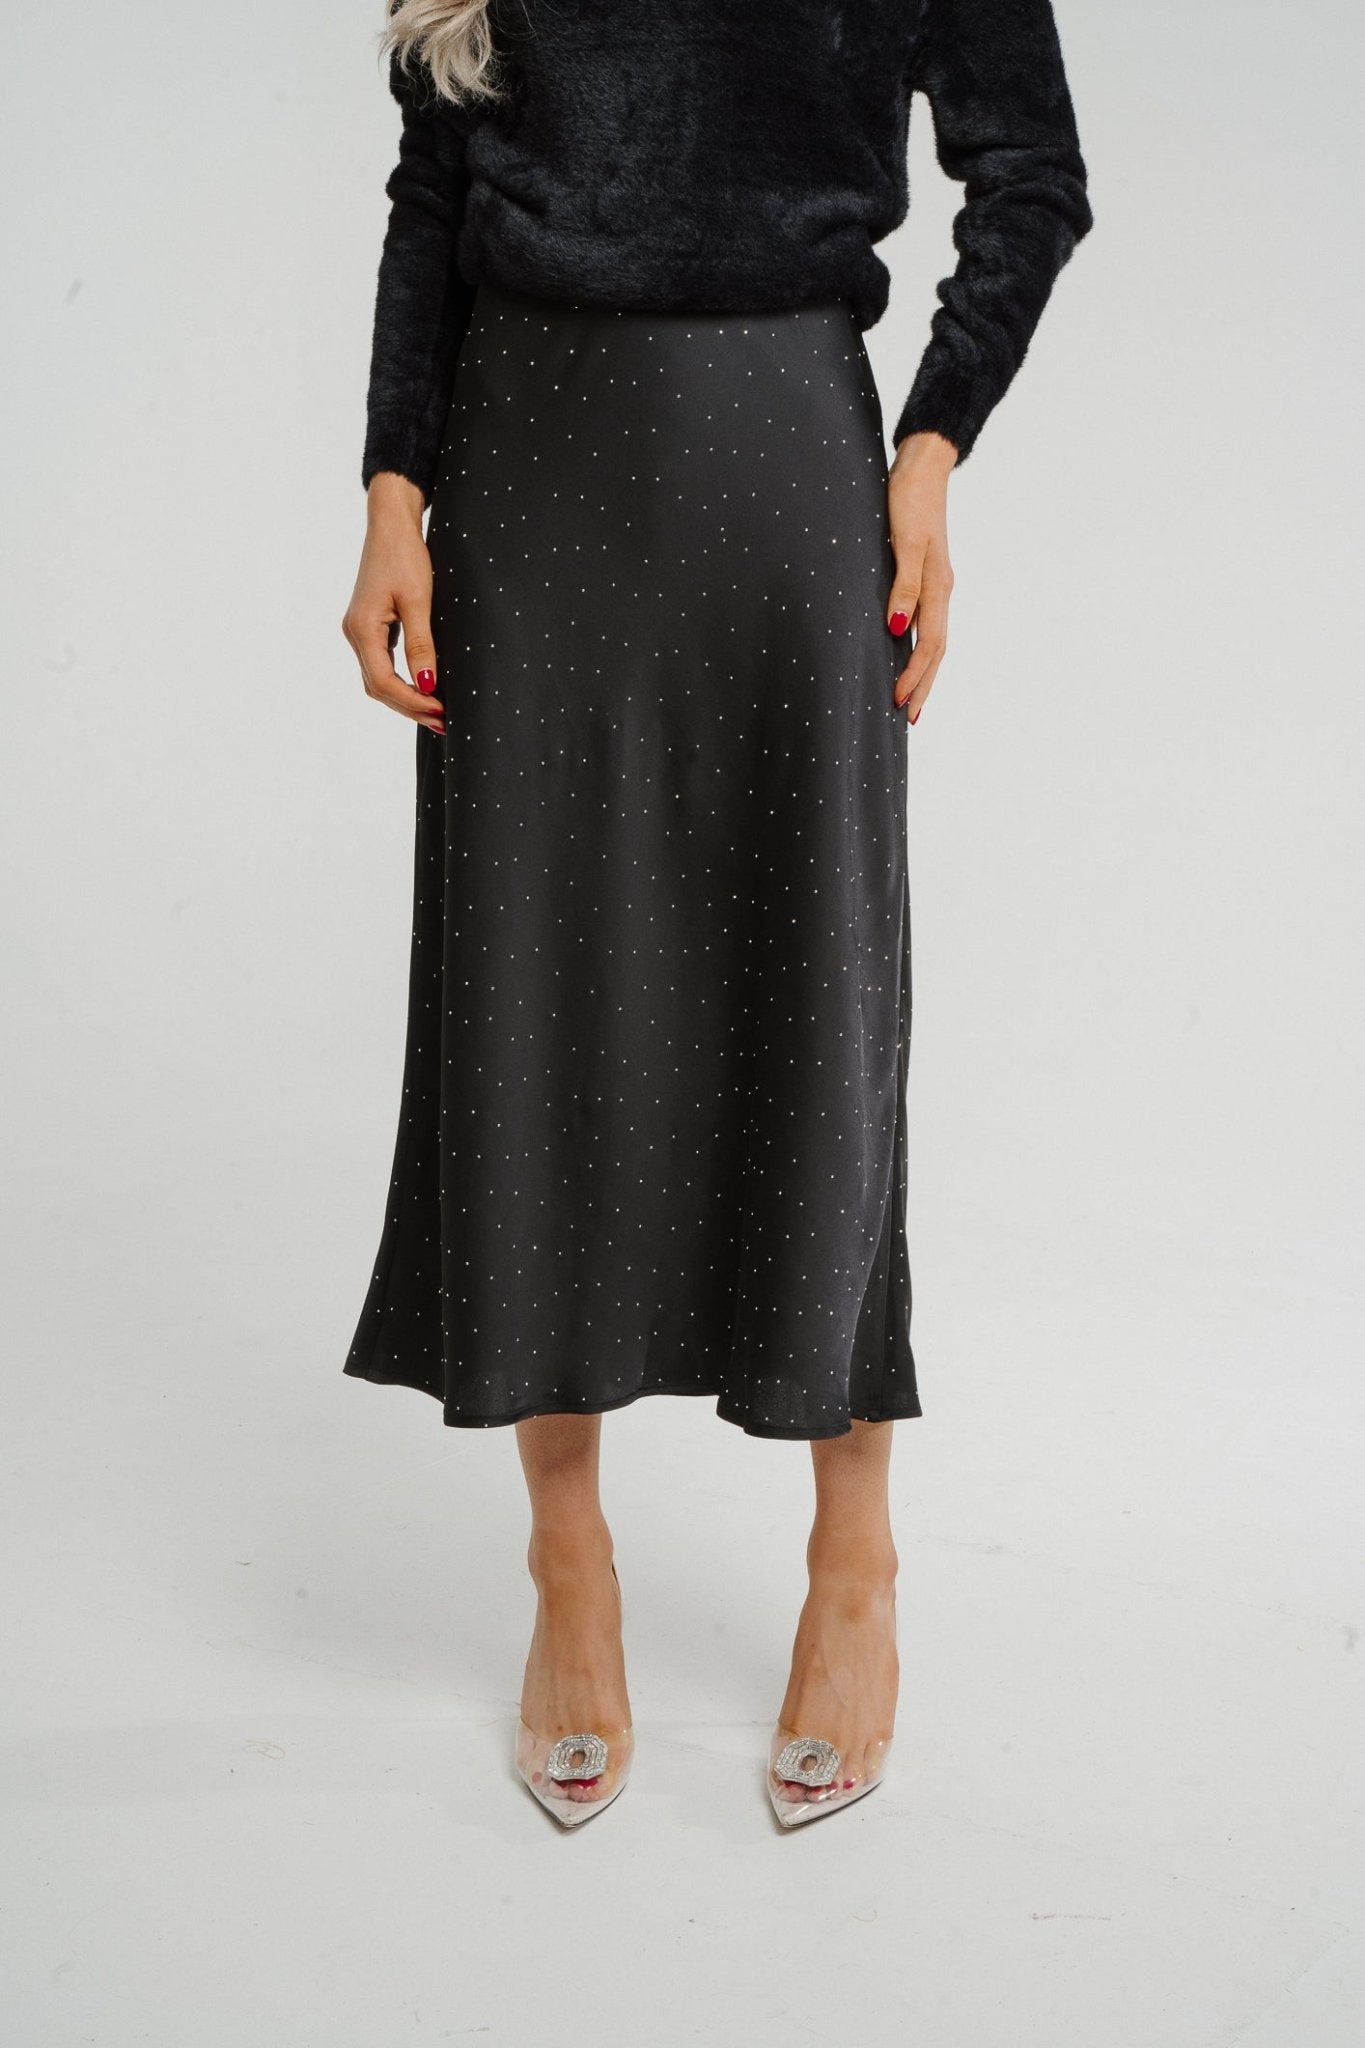 Kate Embellished Satin Midi Skirt In Black - The Walk in Wardrobe